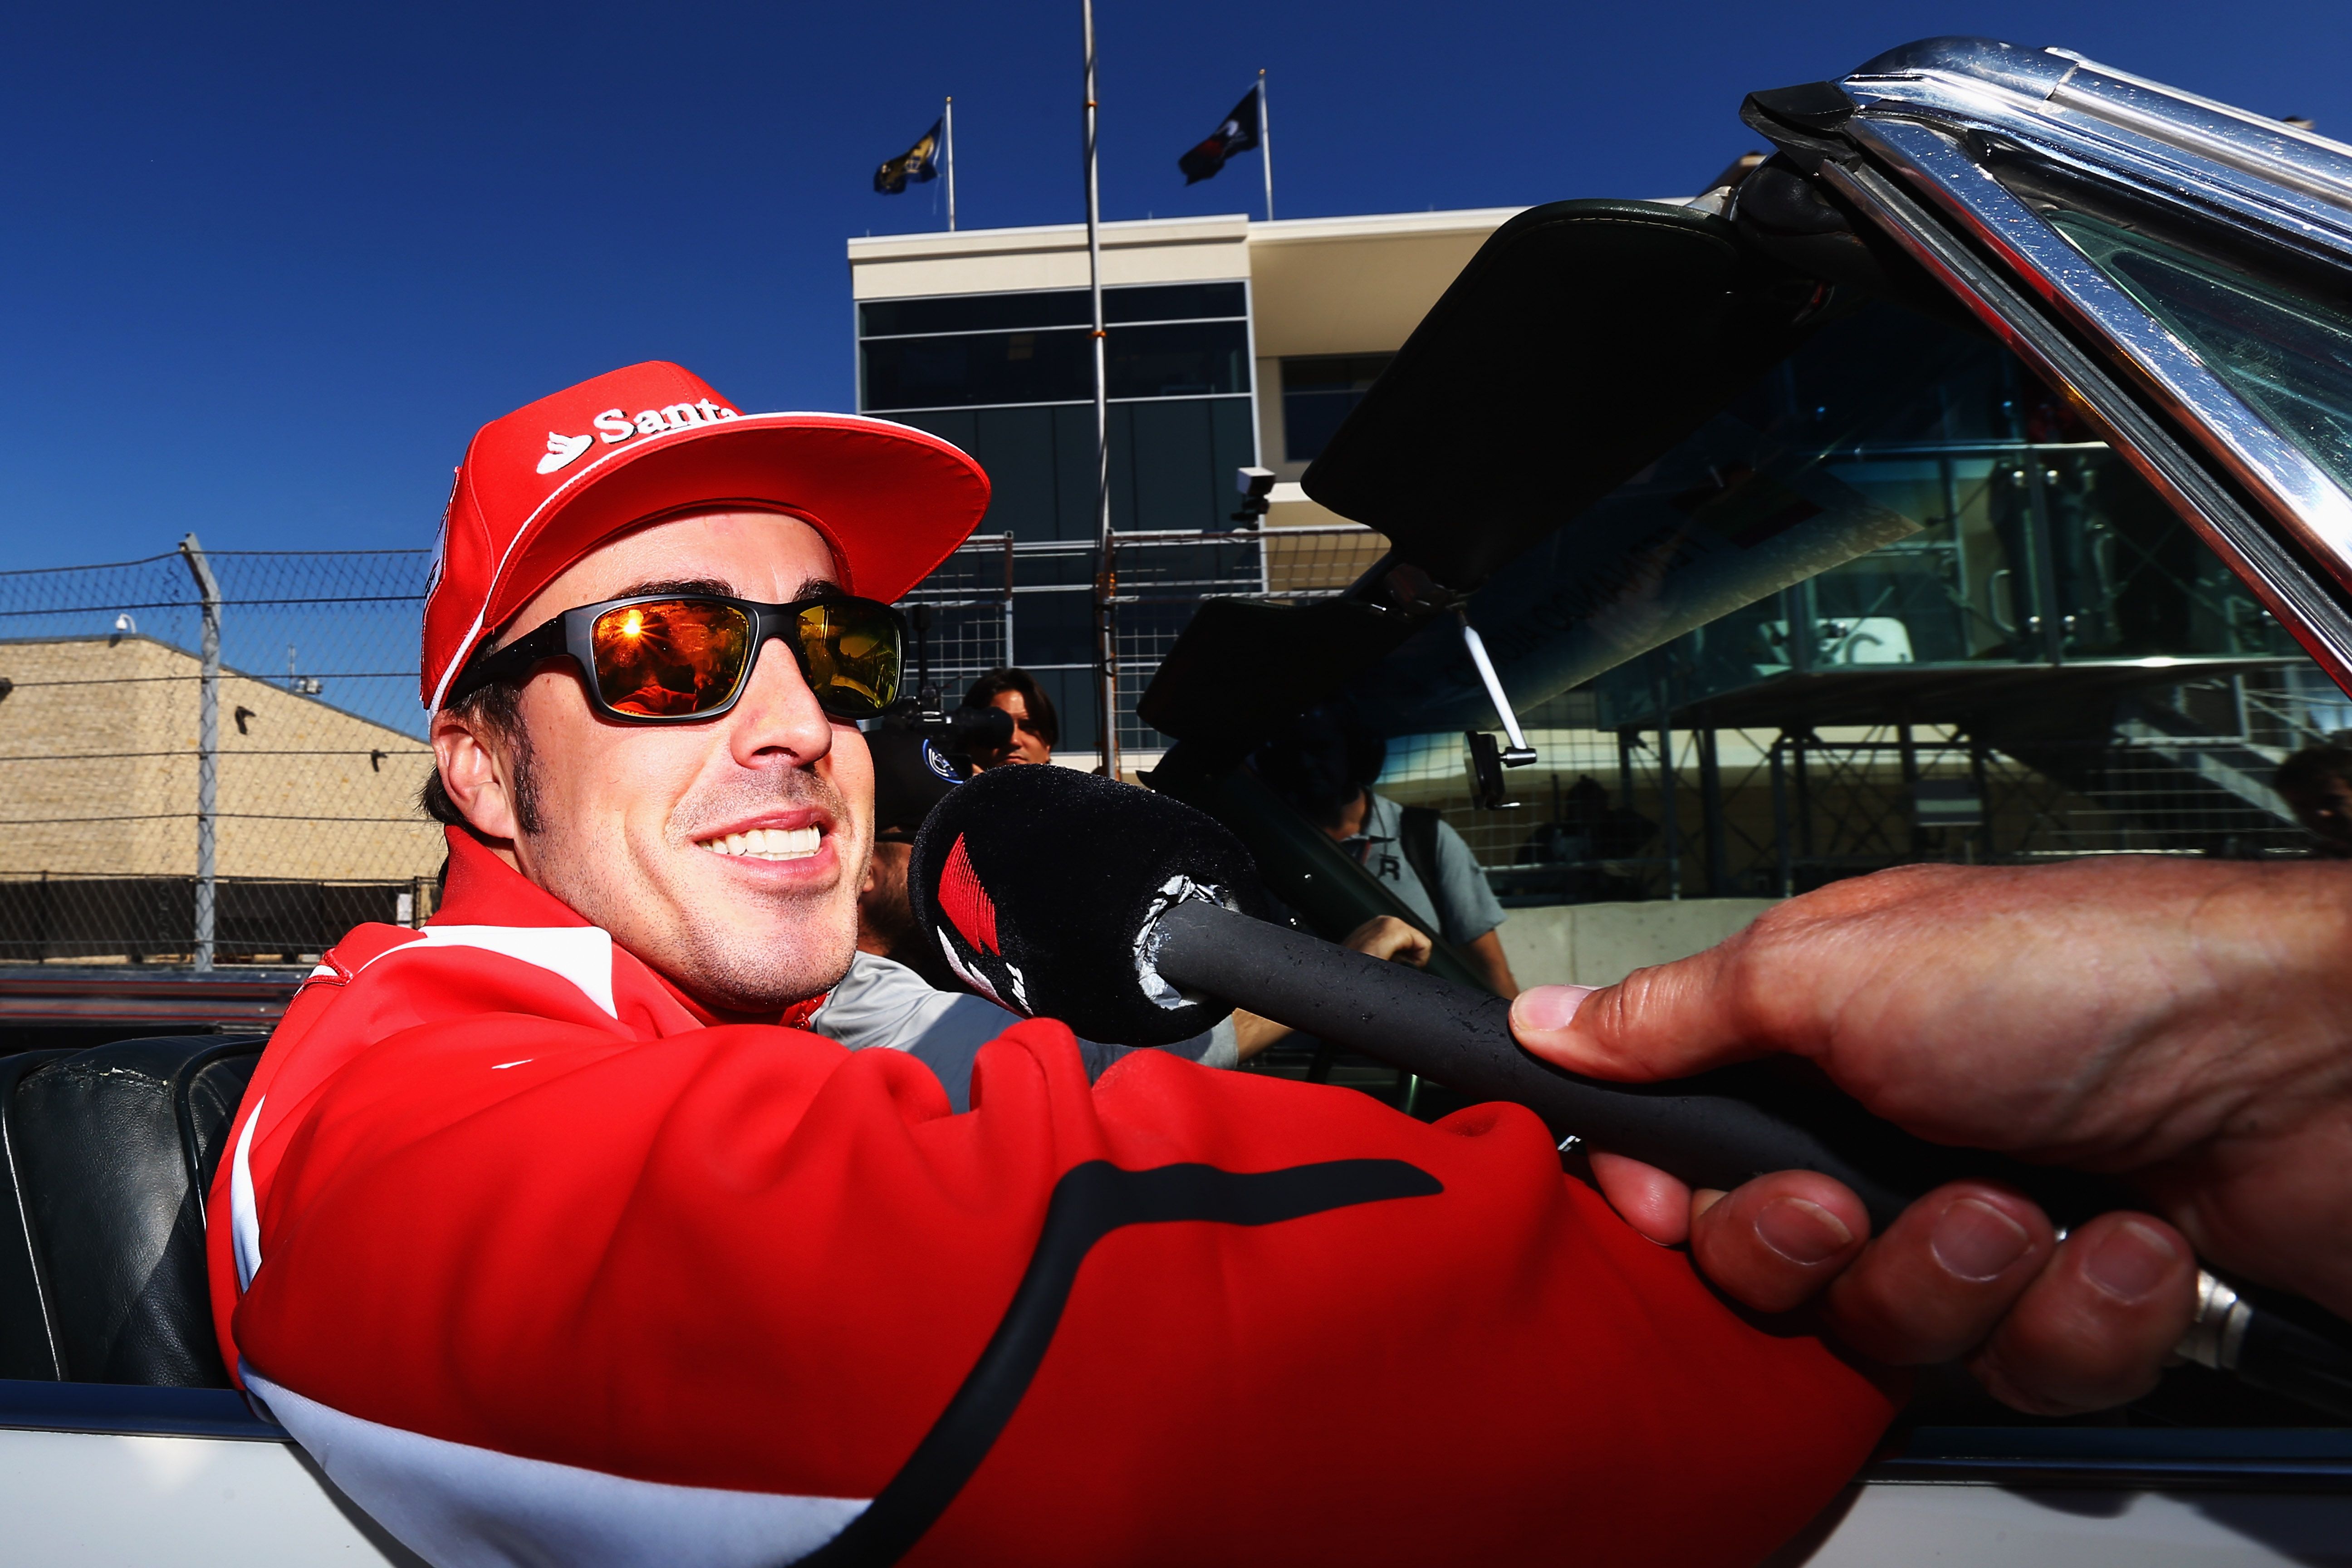 El piloto Fernando Alonso, de 39 años fue atropellado por el piloto de un carro en Suiza. Foto Prensa Libre: AFP